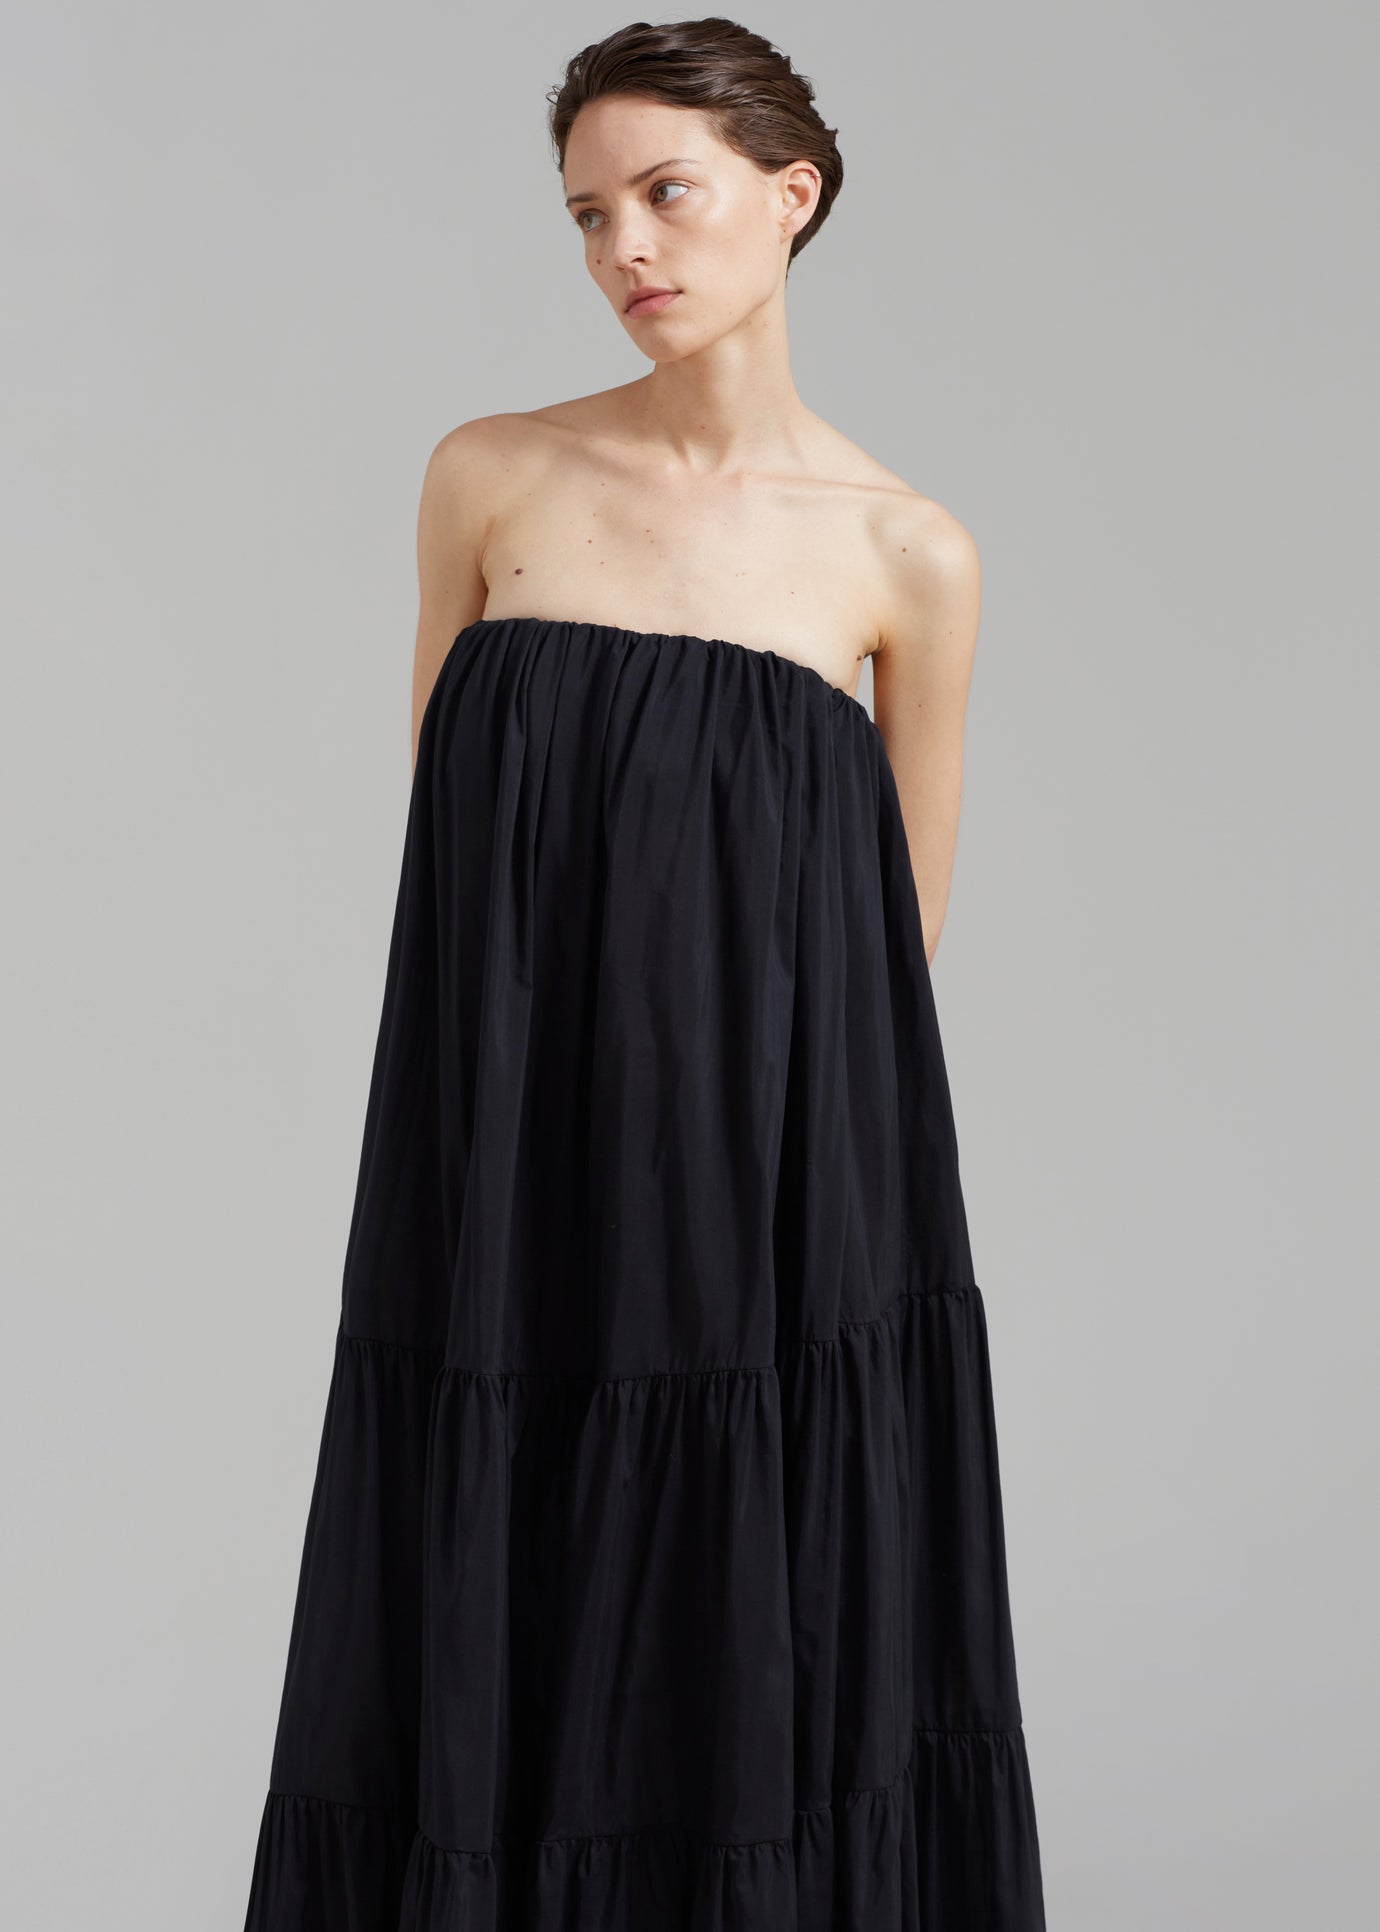 Matteau Voluminous Strapless Tiered Dress - Black - 1